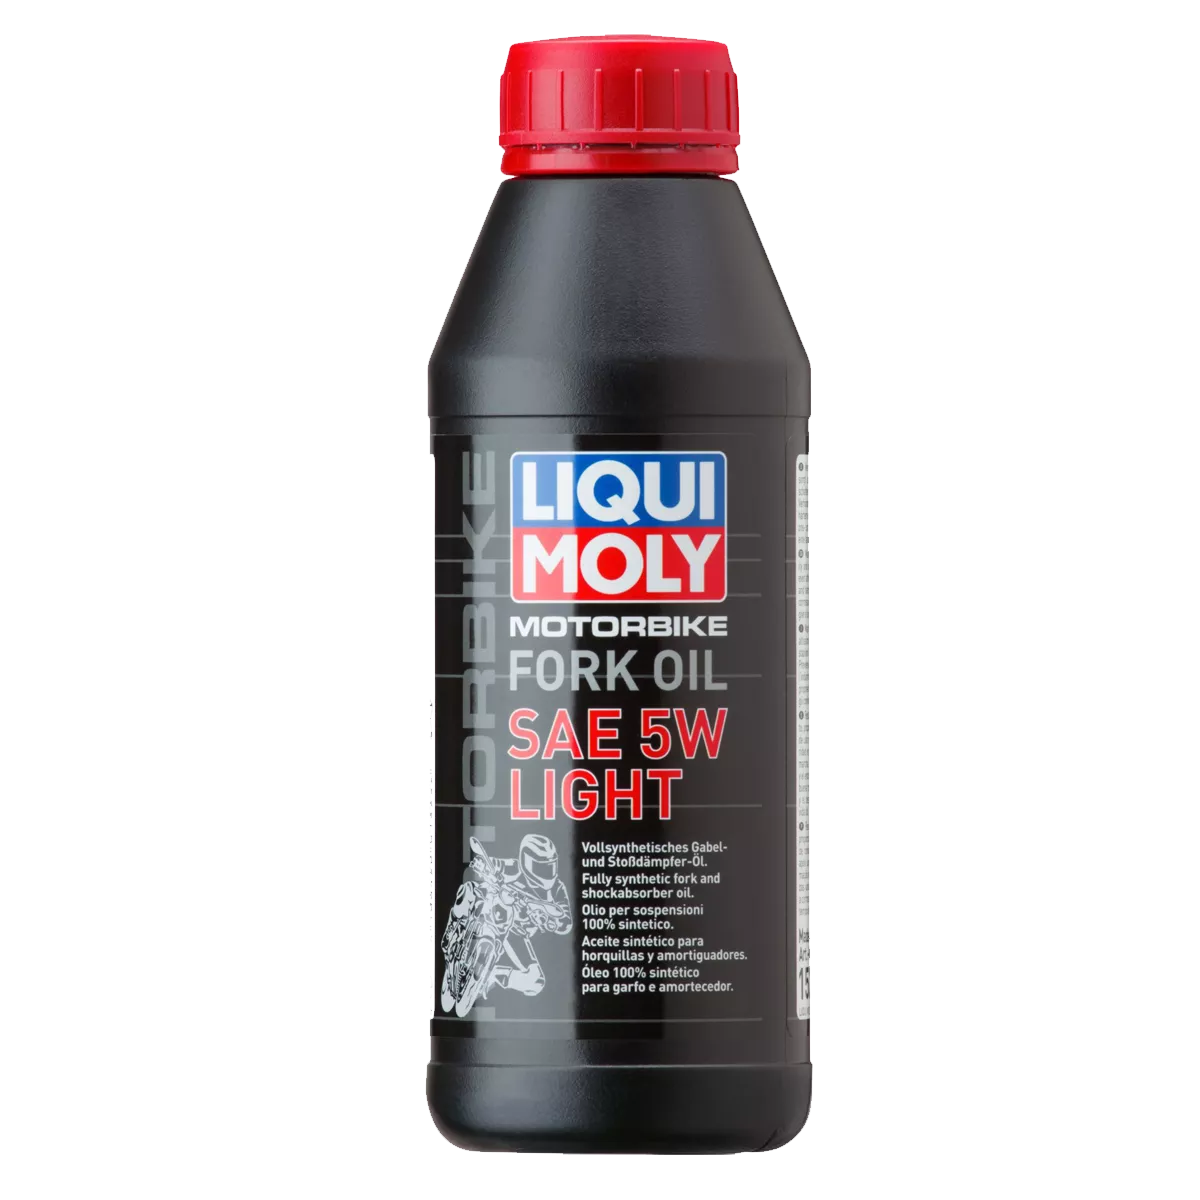 Трансмиссионное масло Liqui Moly Motorbike (motorrad) Fork Oil 5W Light 0,5л 7598